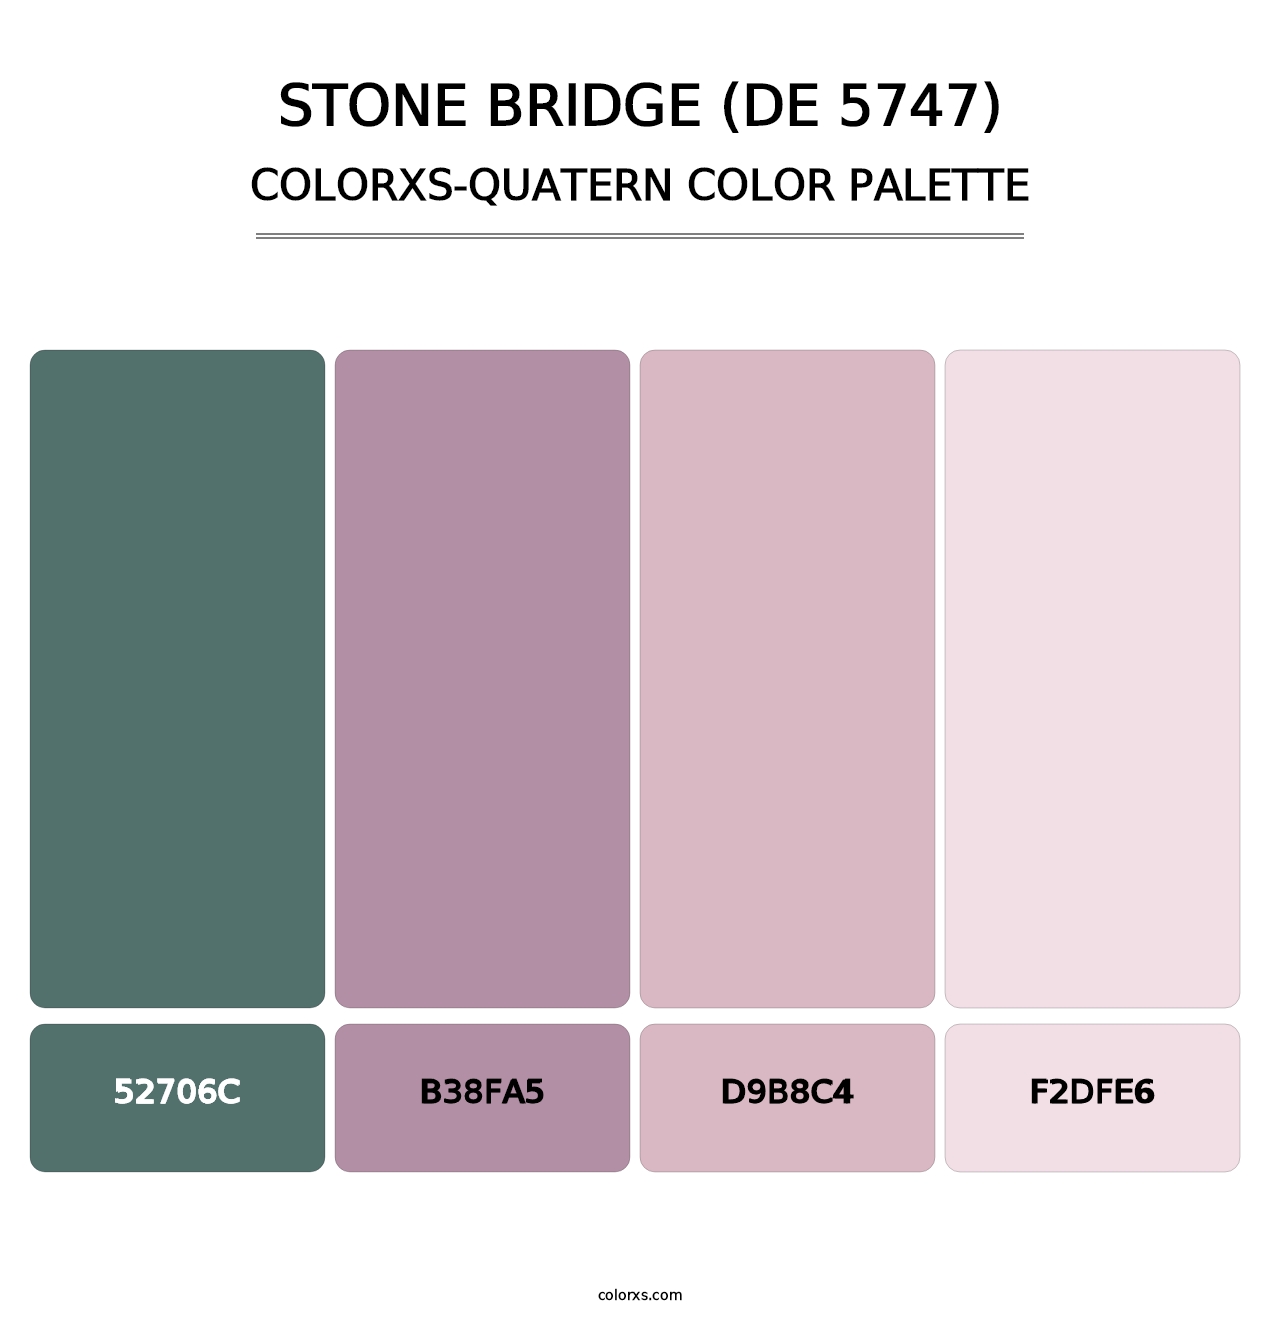 Stone Bridge (DE 5747) - Colorxs Quatern Palette